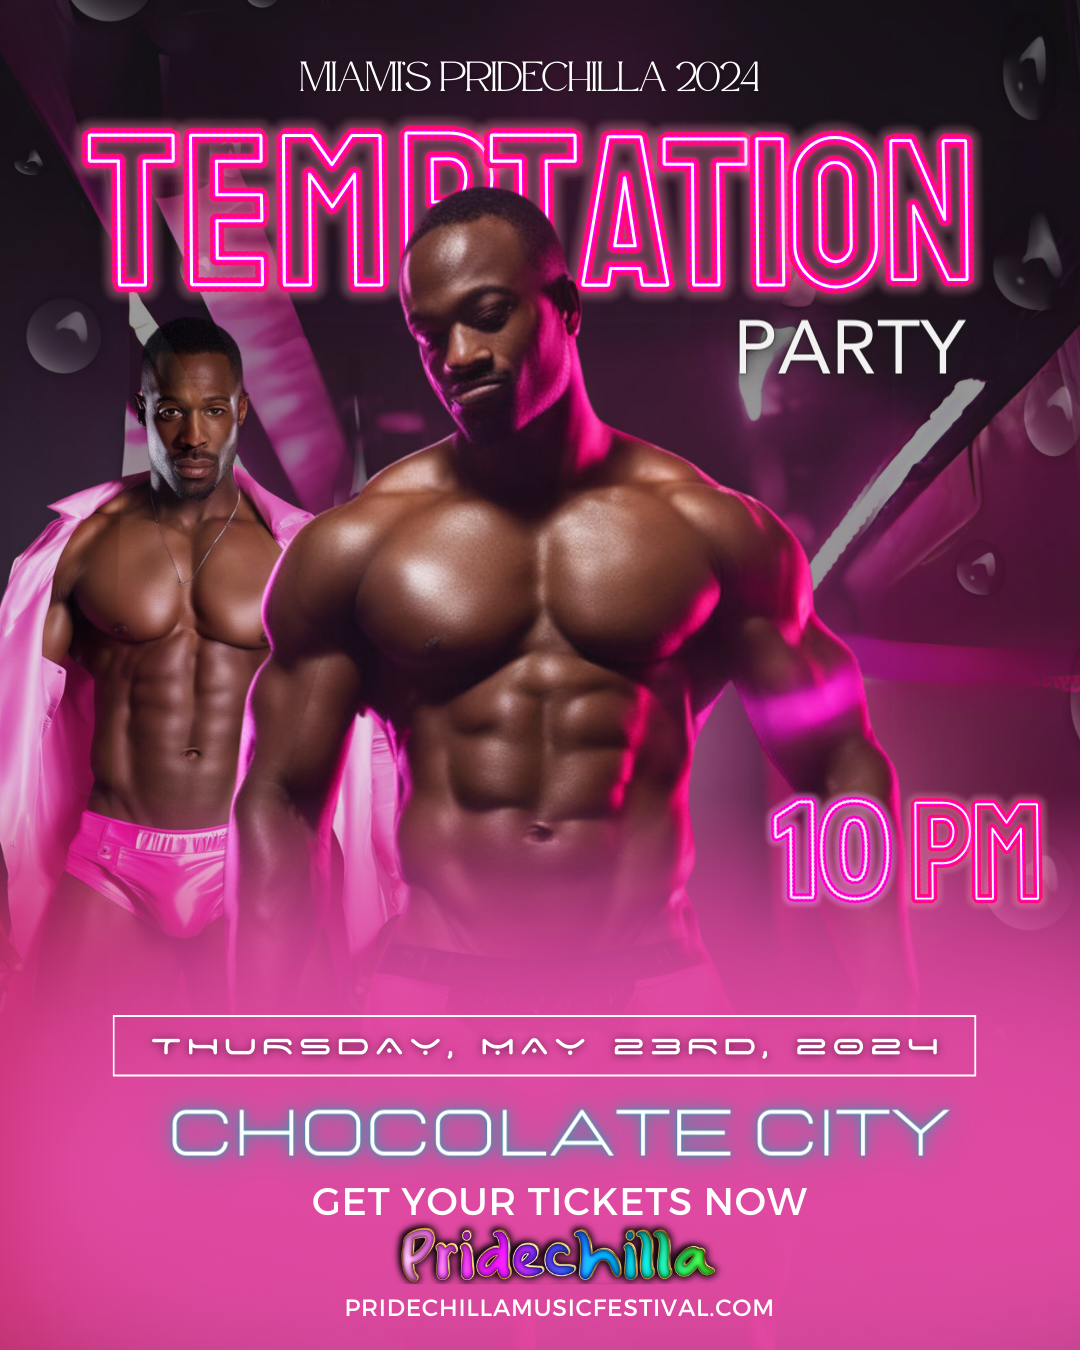 Temptation  on may. 23, 22:00@Chocolate City - Compra entradas y obtén información enAfro Pride Federation pridechillamusicfestival